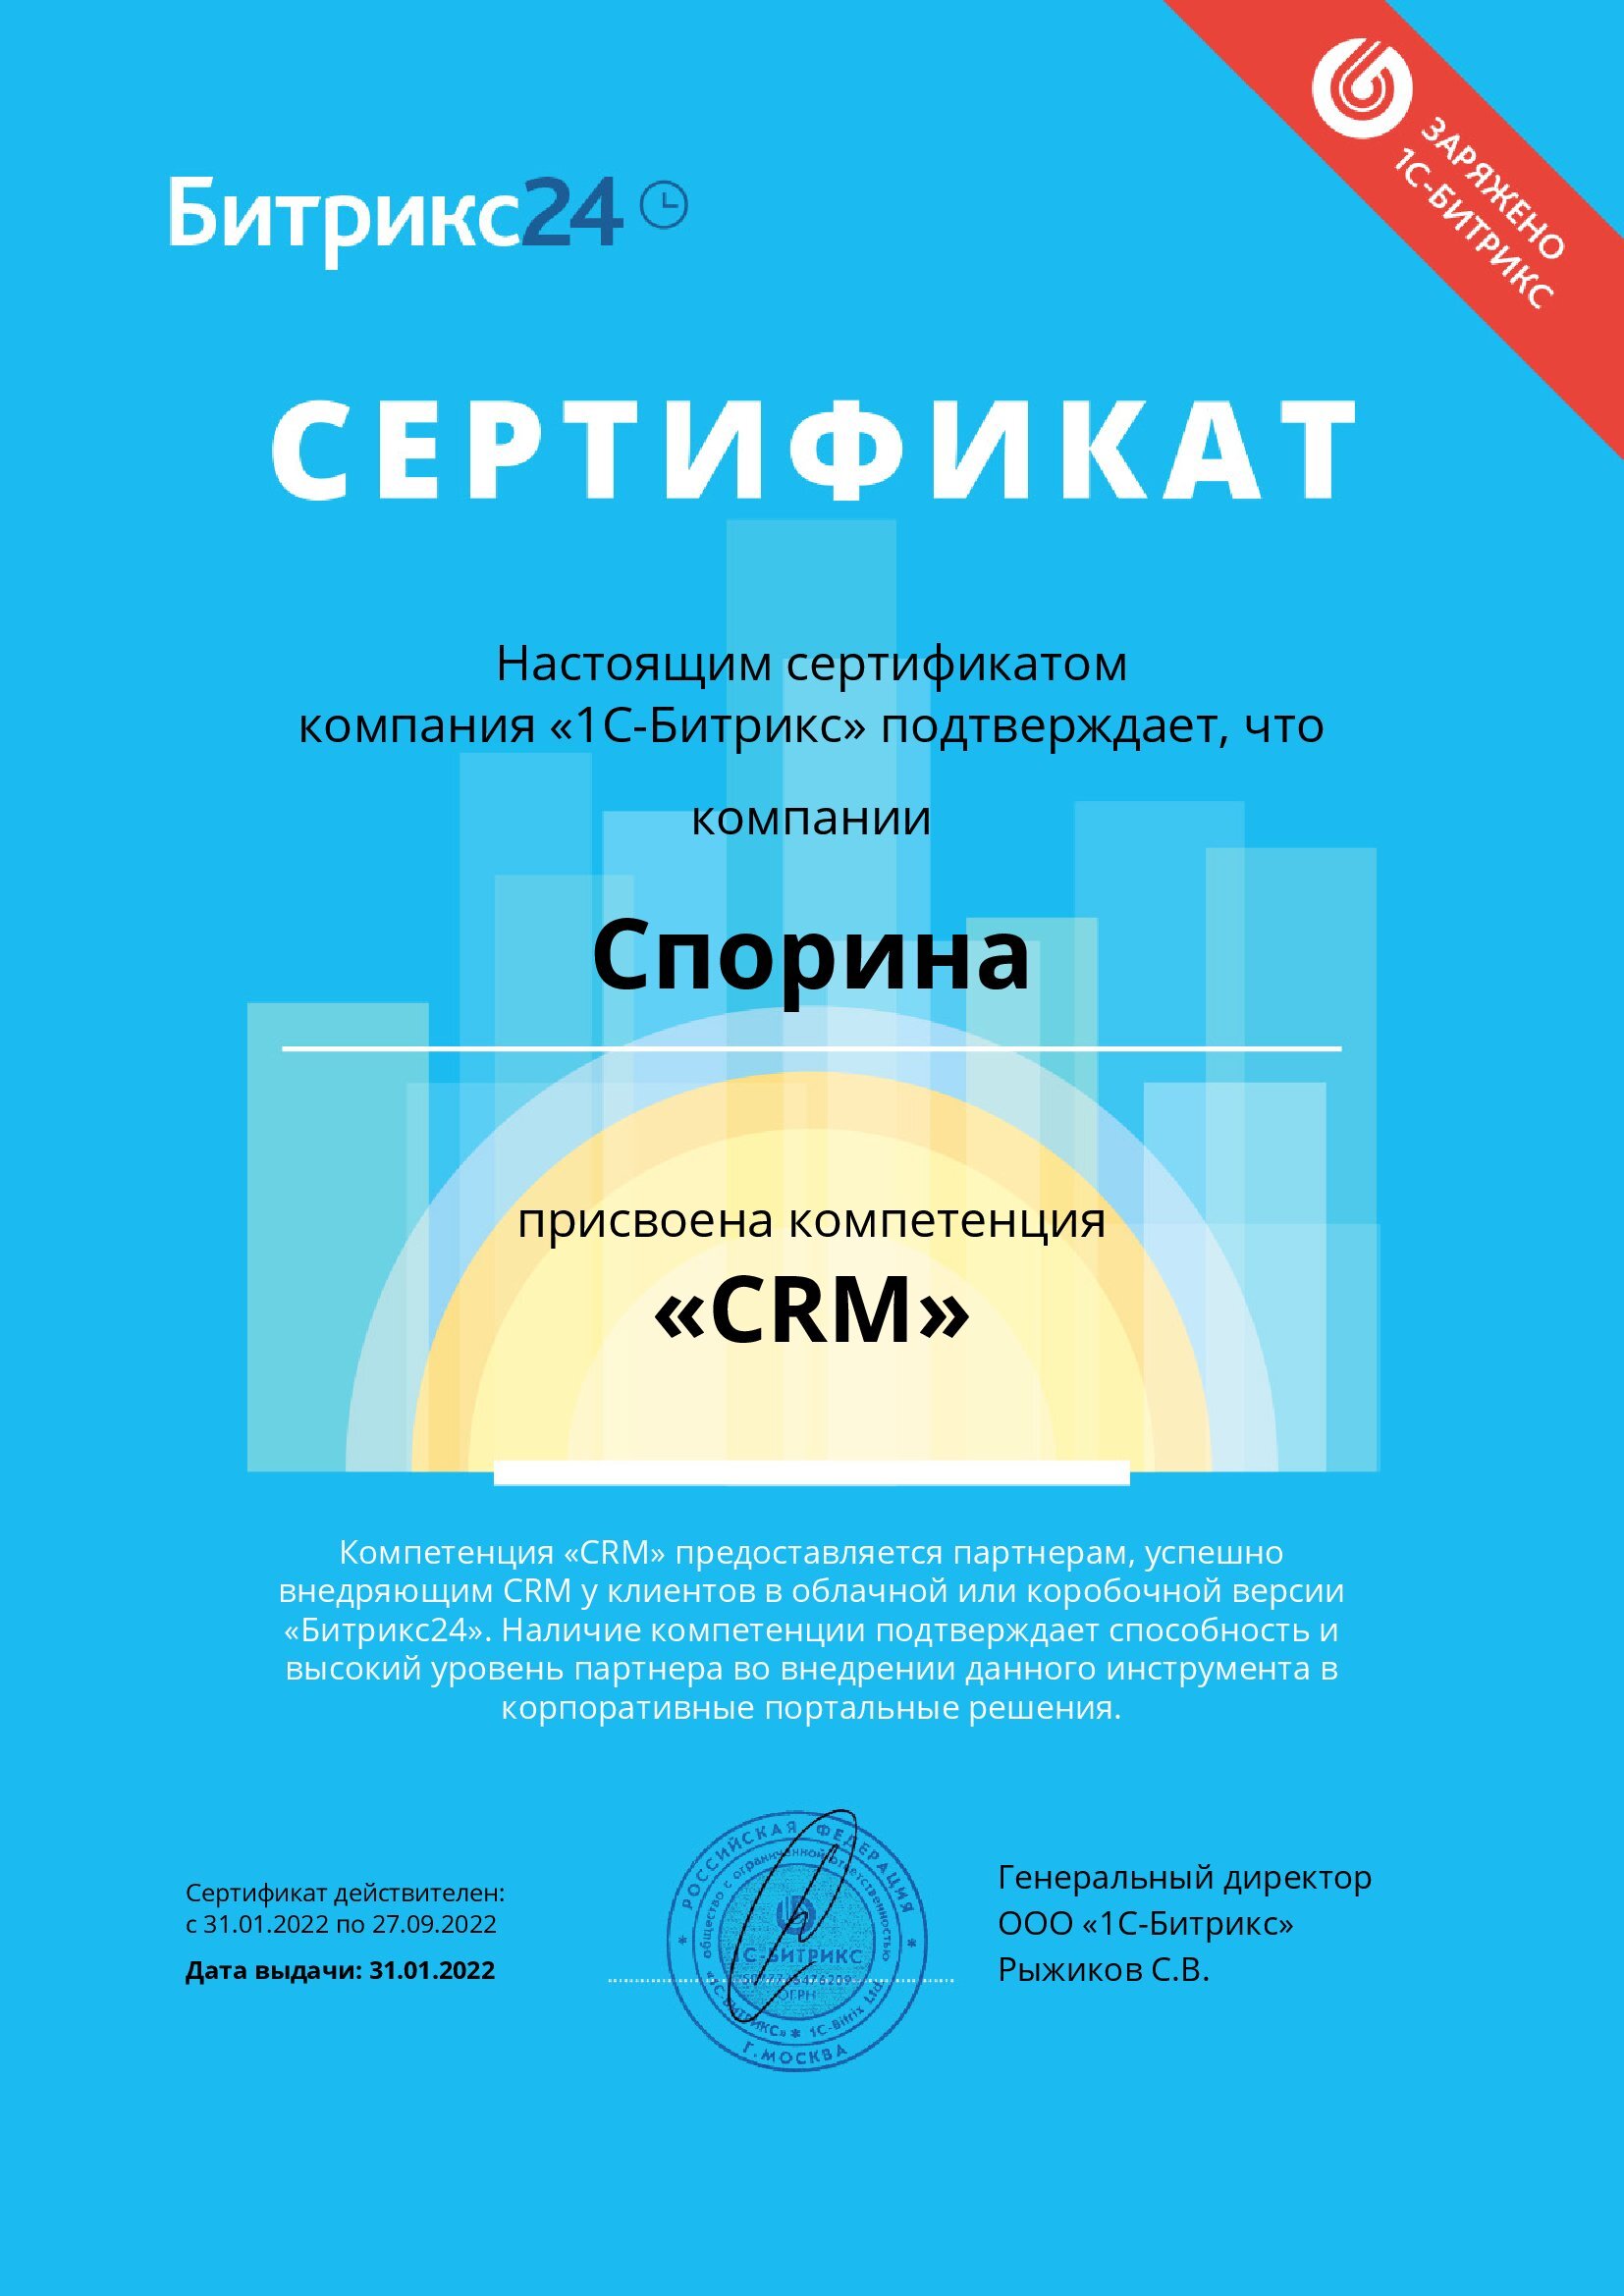 Компетенция CRM